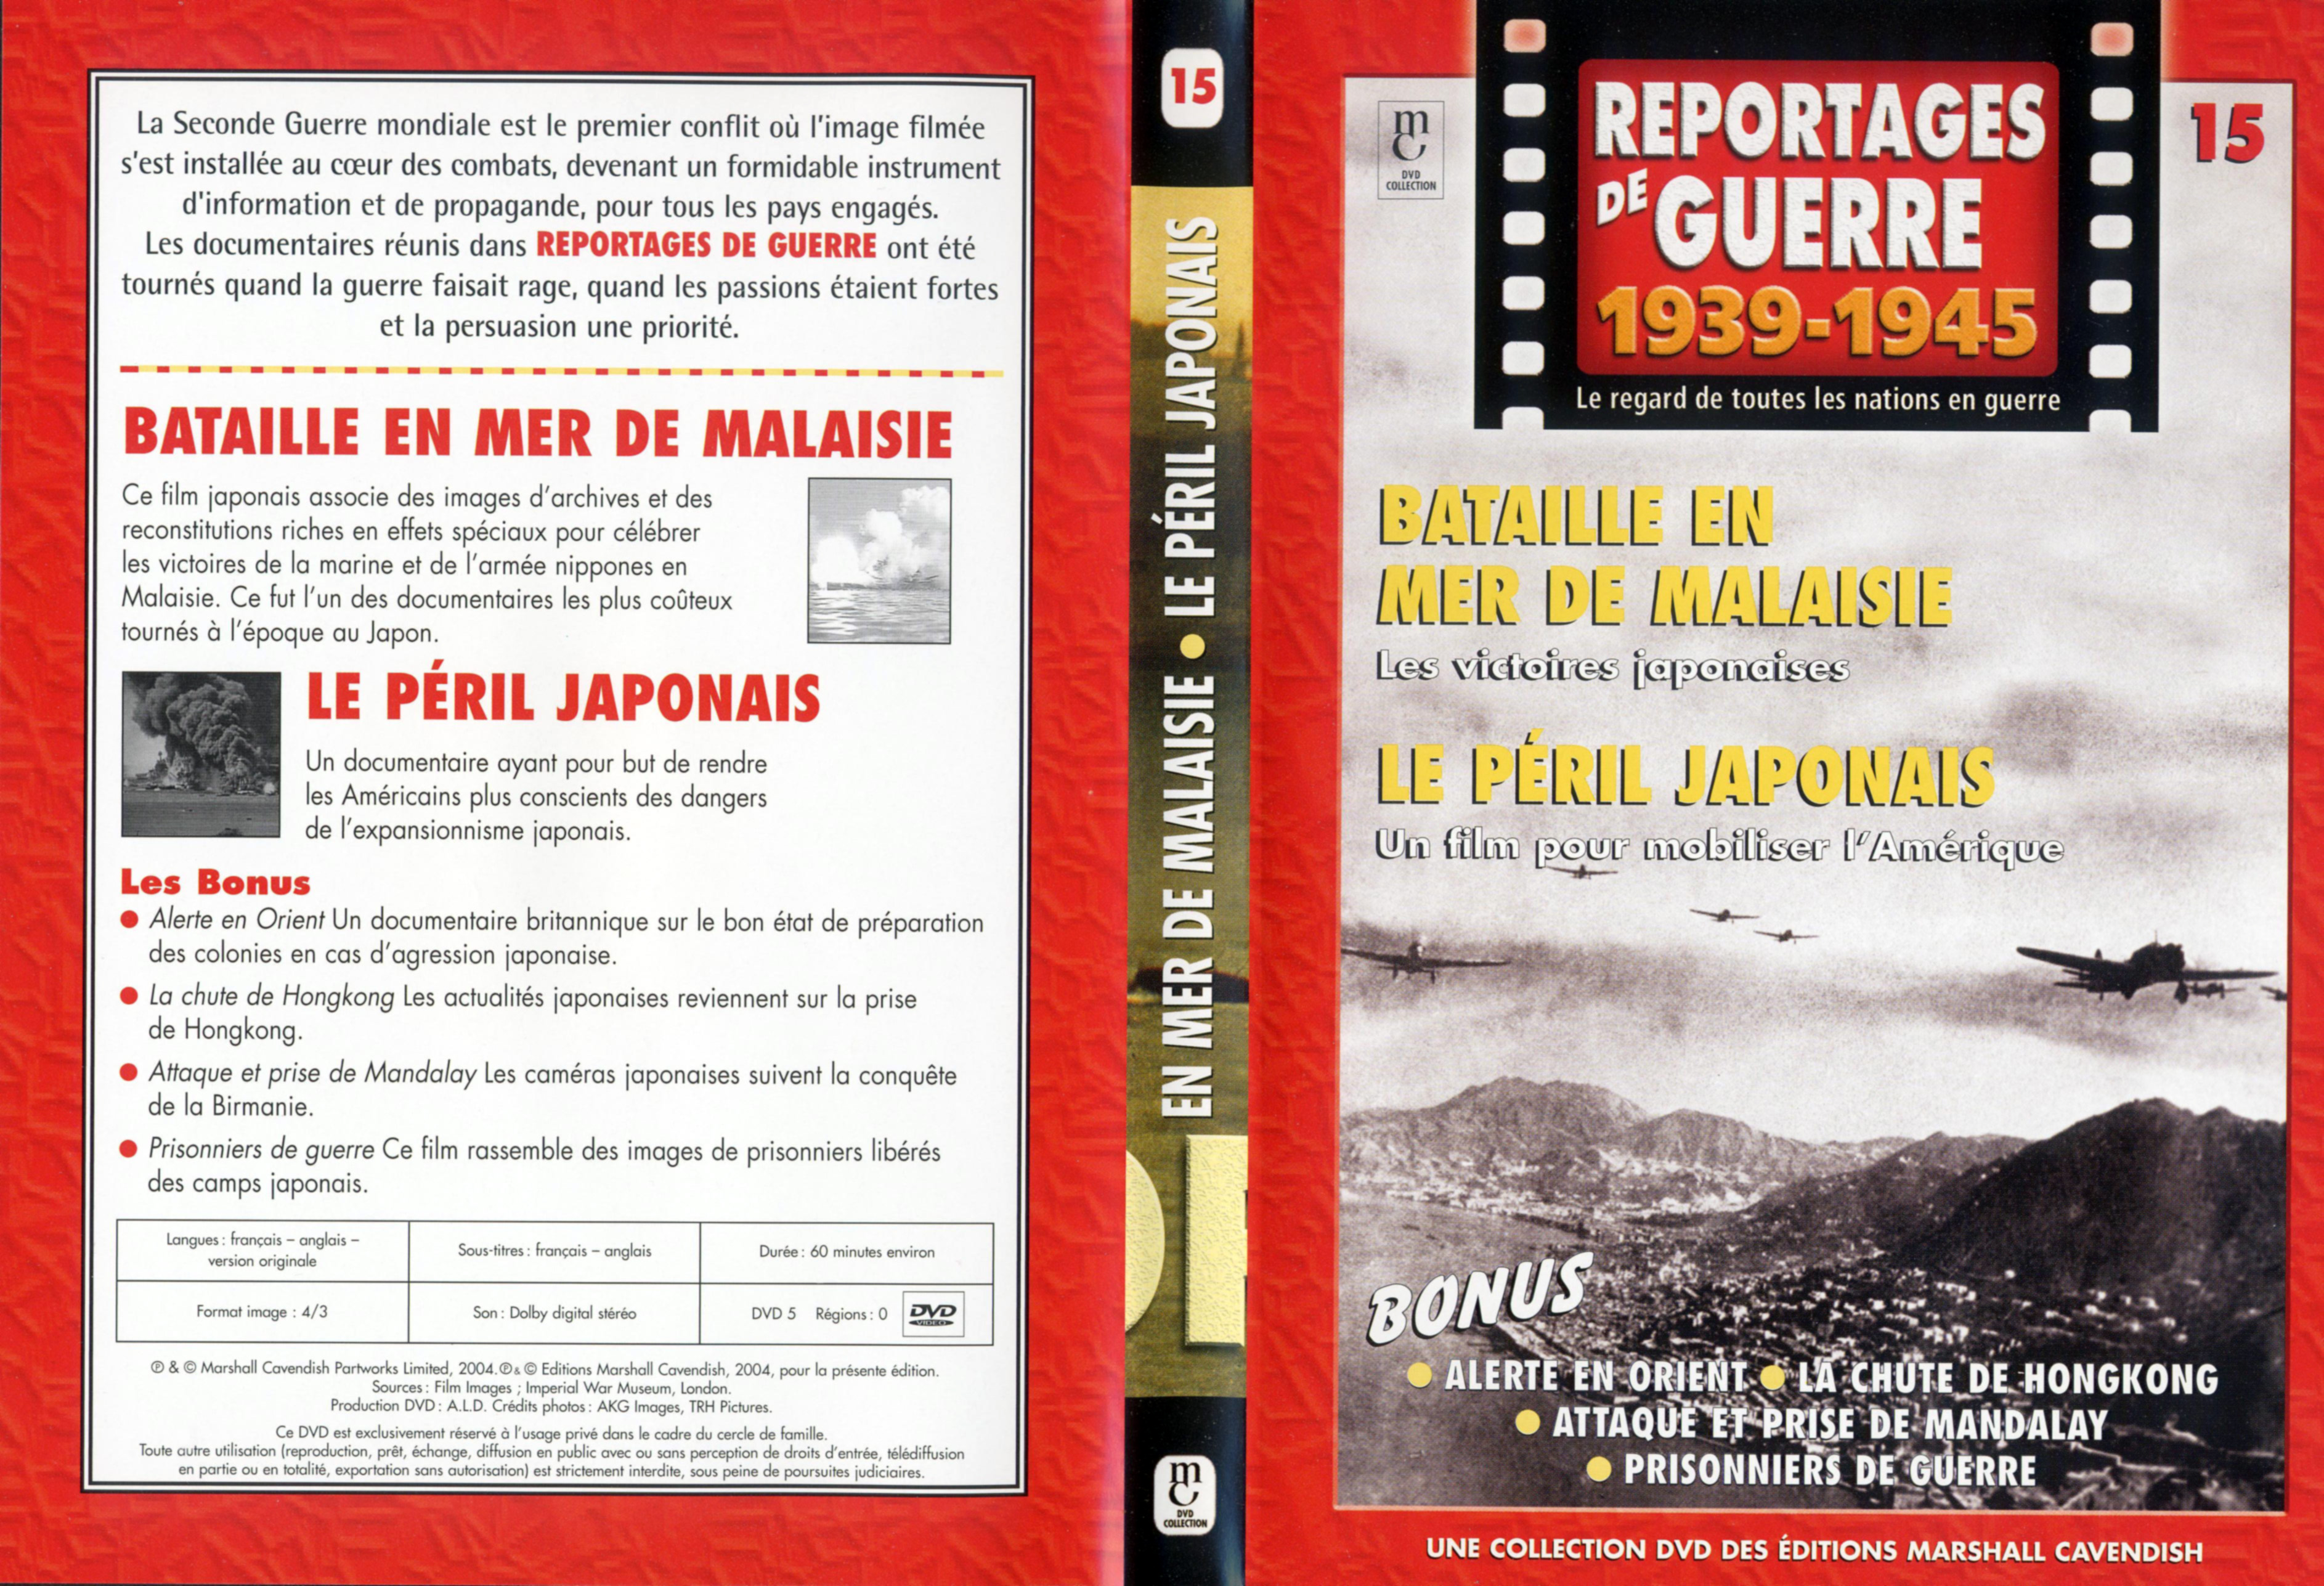 Jaquette DVD Reportages de guerre vol 15